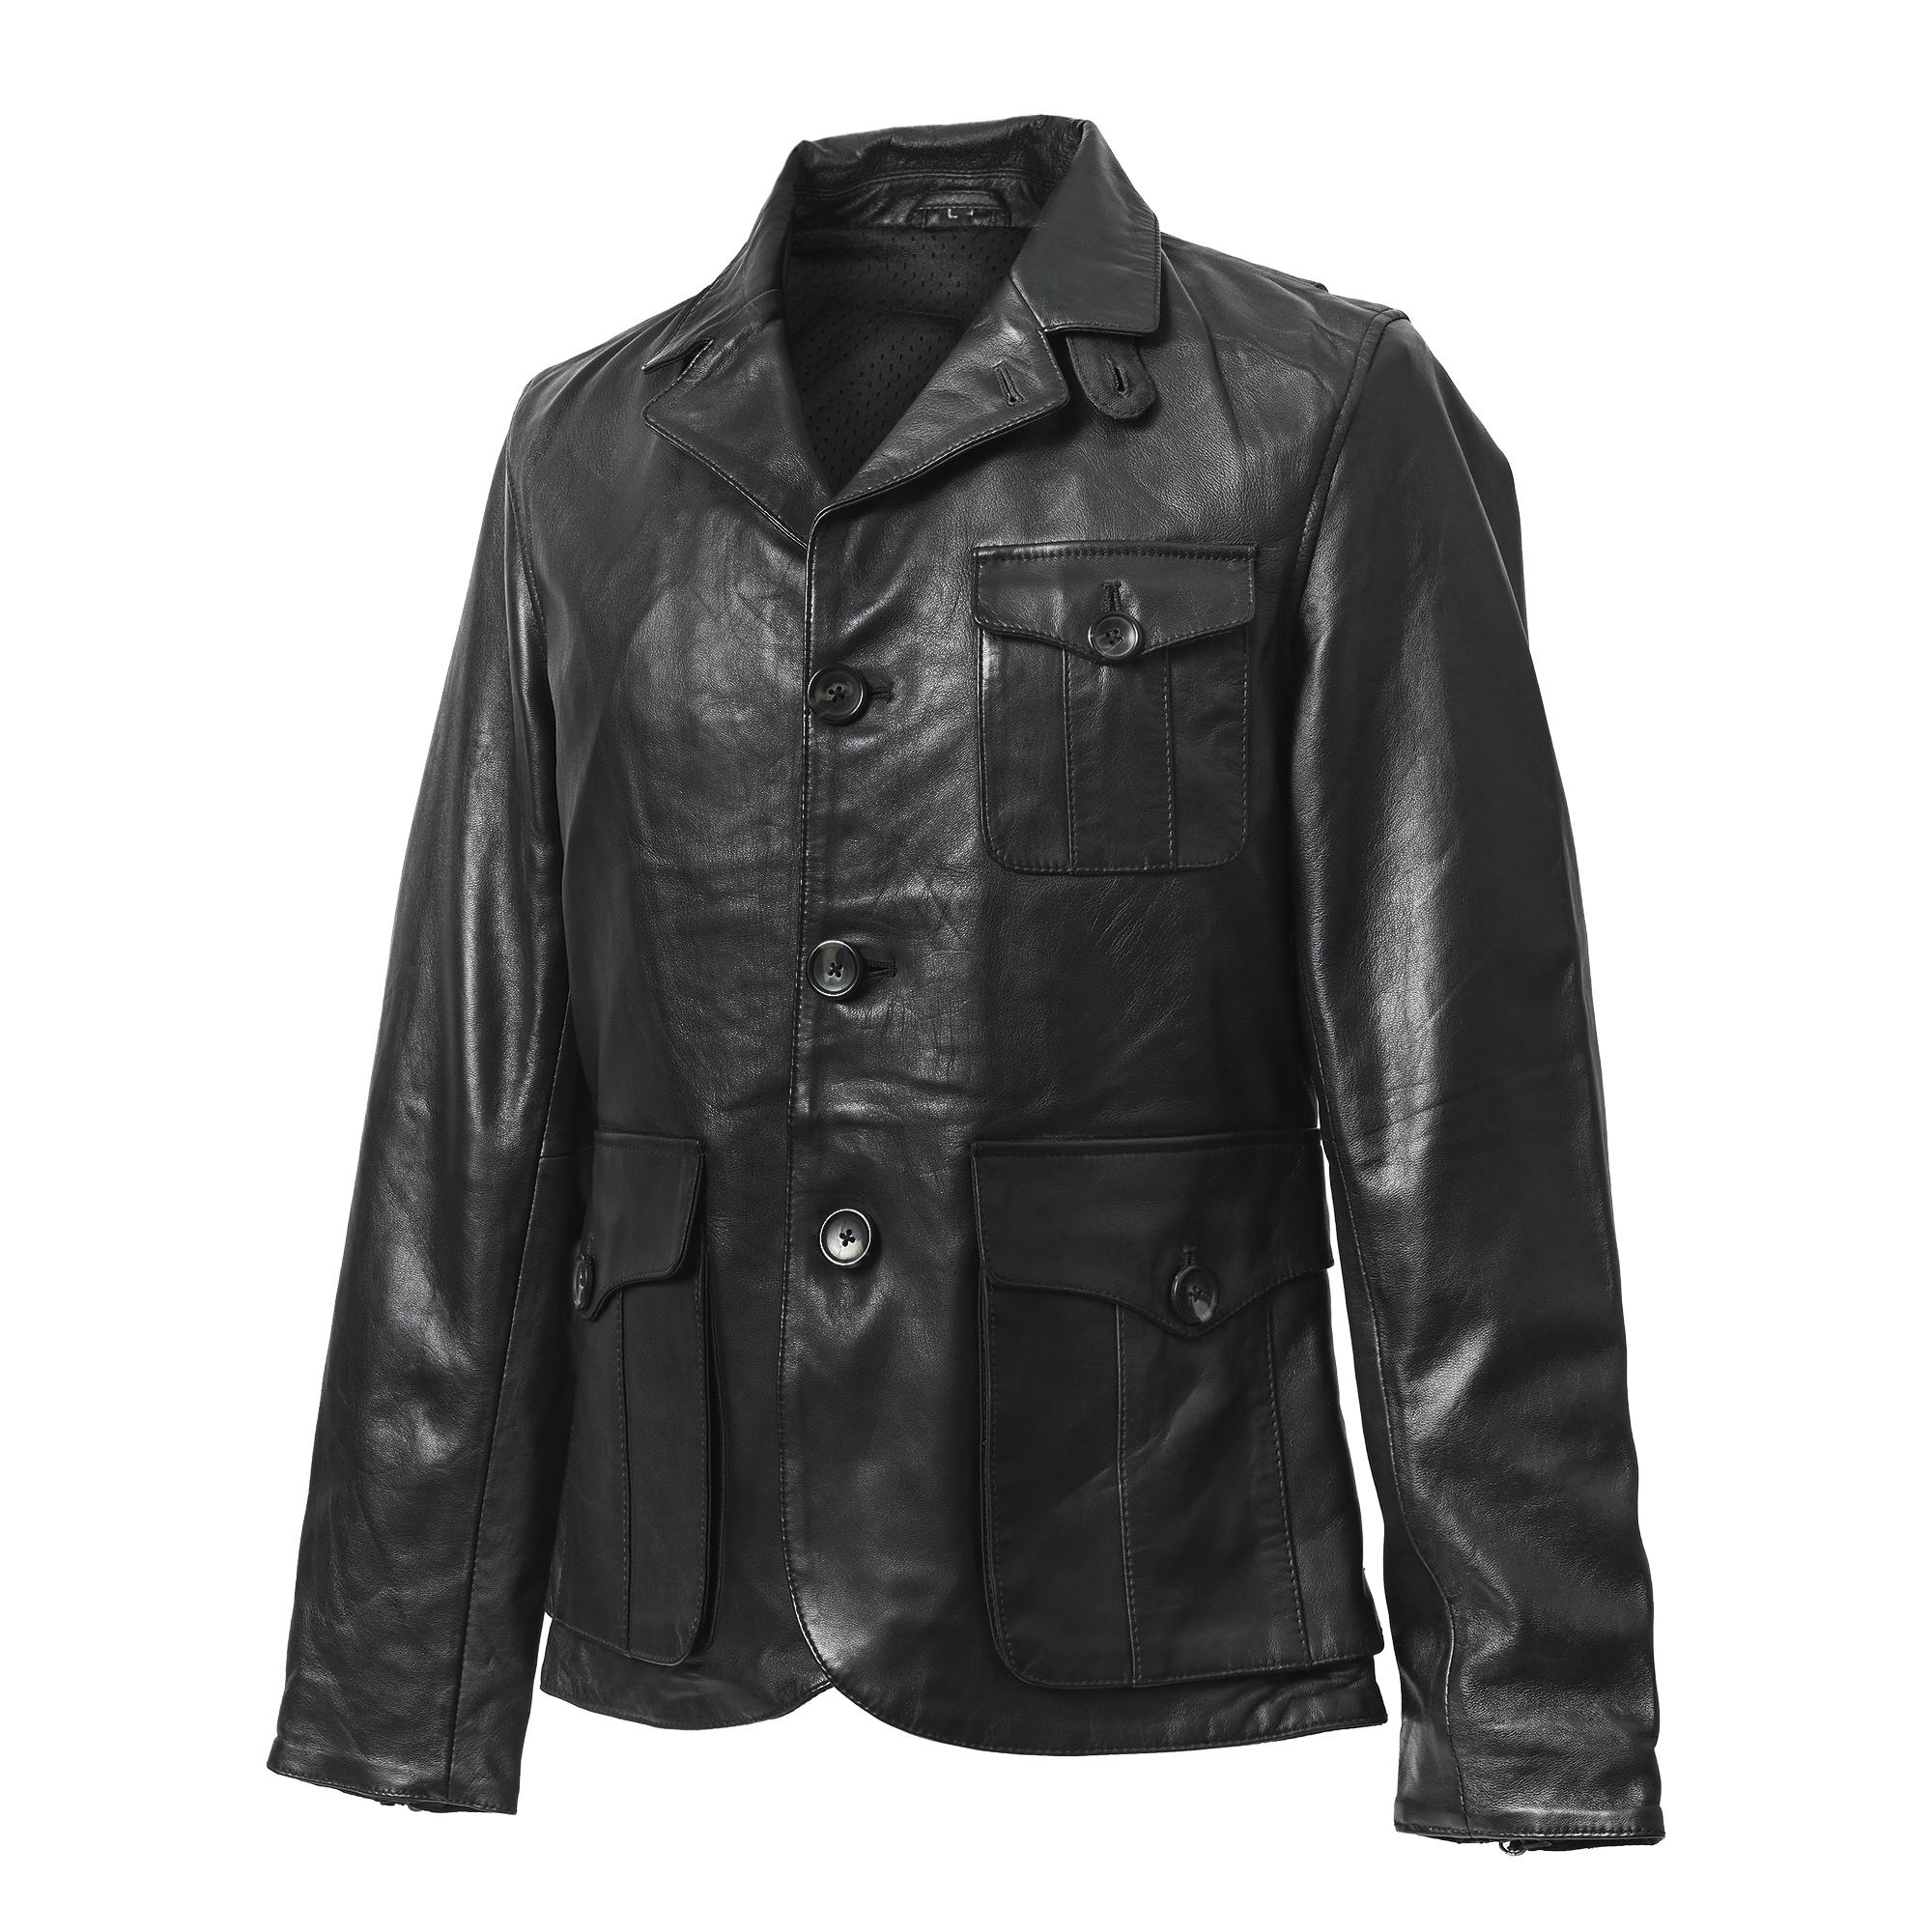 RIDEZ GENTS JACKET Motorcycle Leather Jacket Black RLJ900 